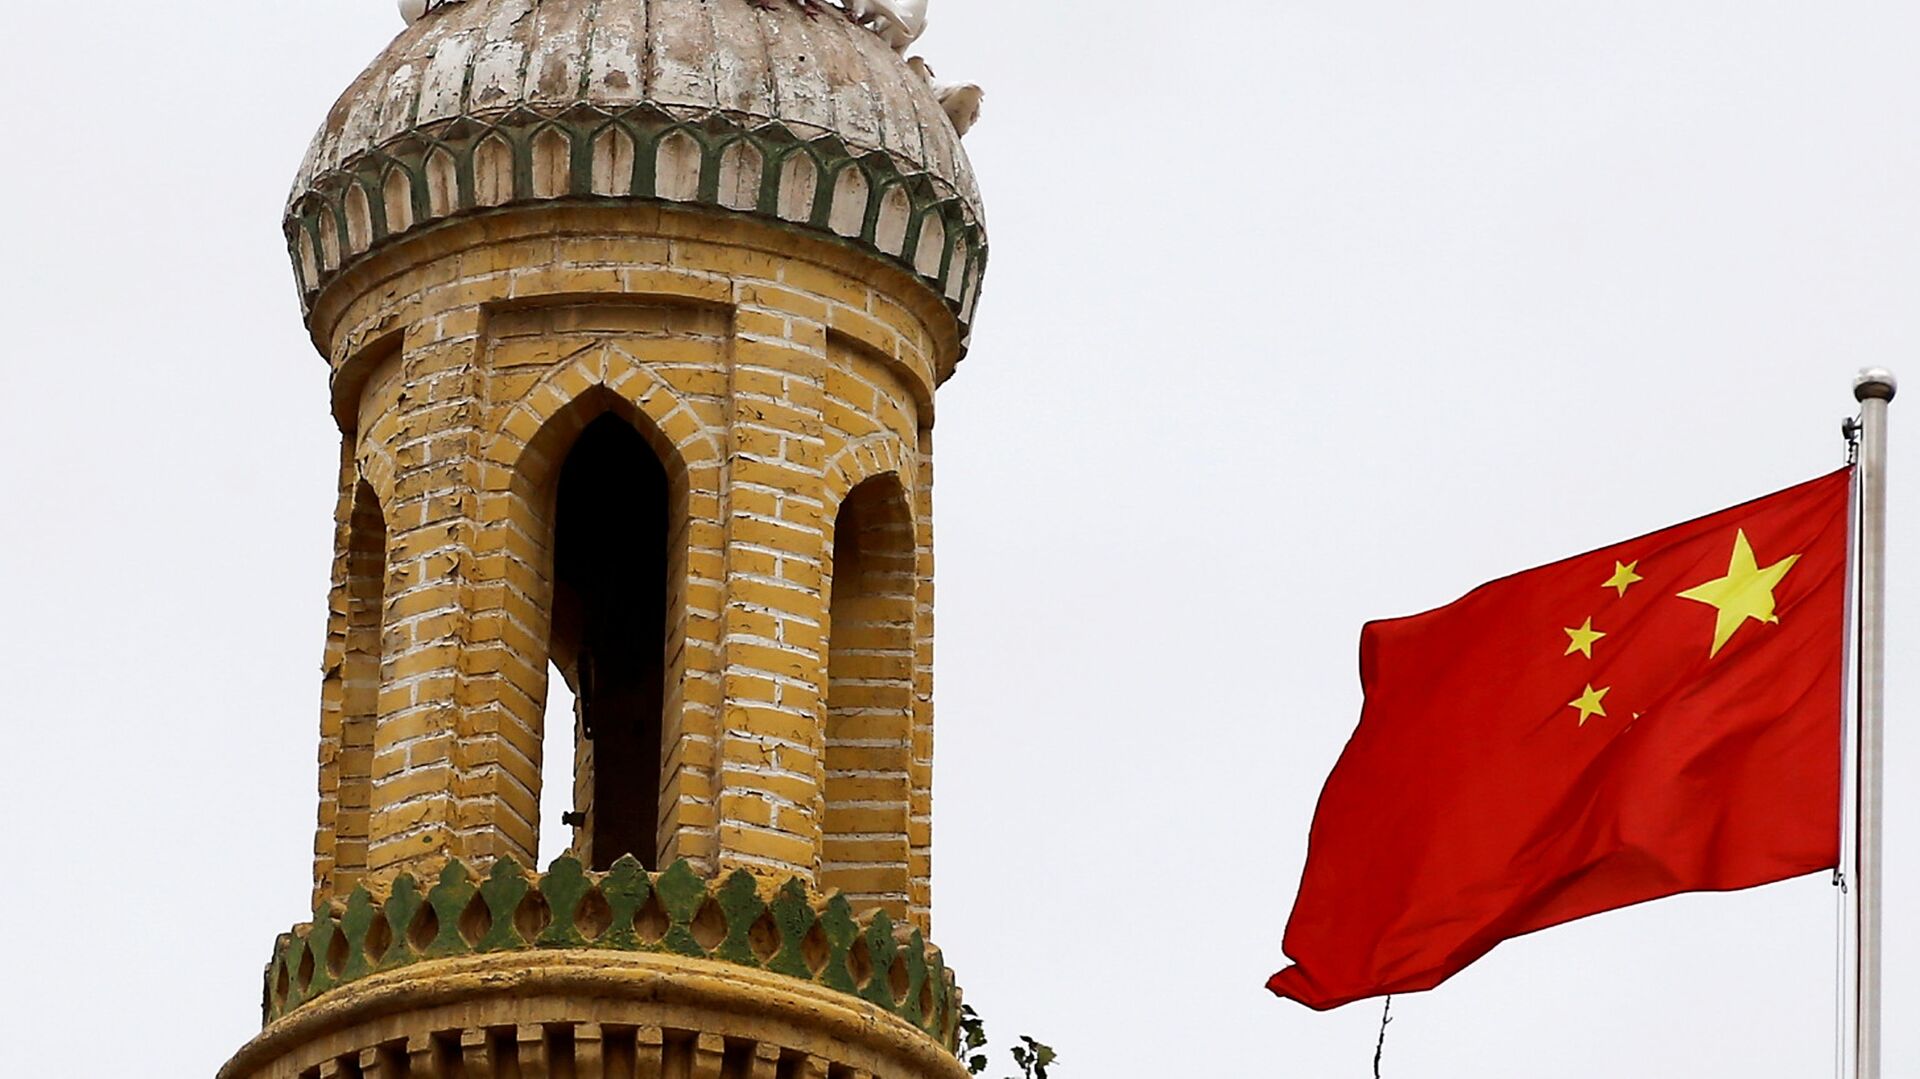 Китайский флаг на башне в Кашгаре, Синьцзян-Уйгурский автономный район, Китай - Sputnik Узбекистан, 1920, 28.02.2021